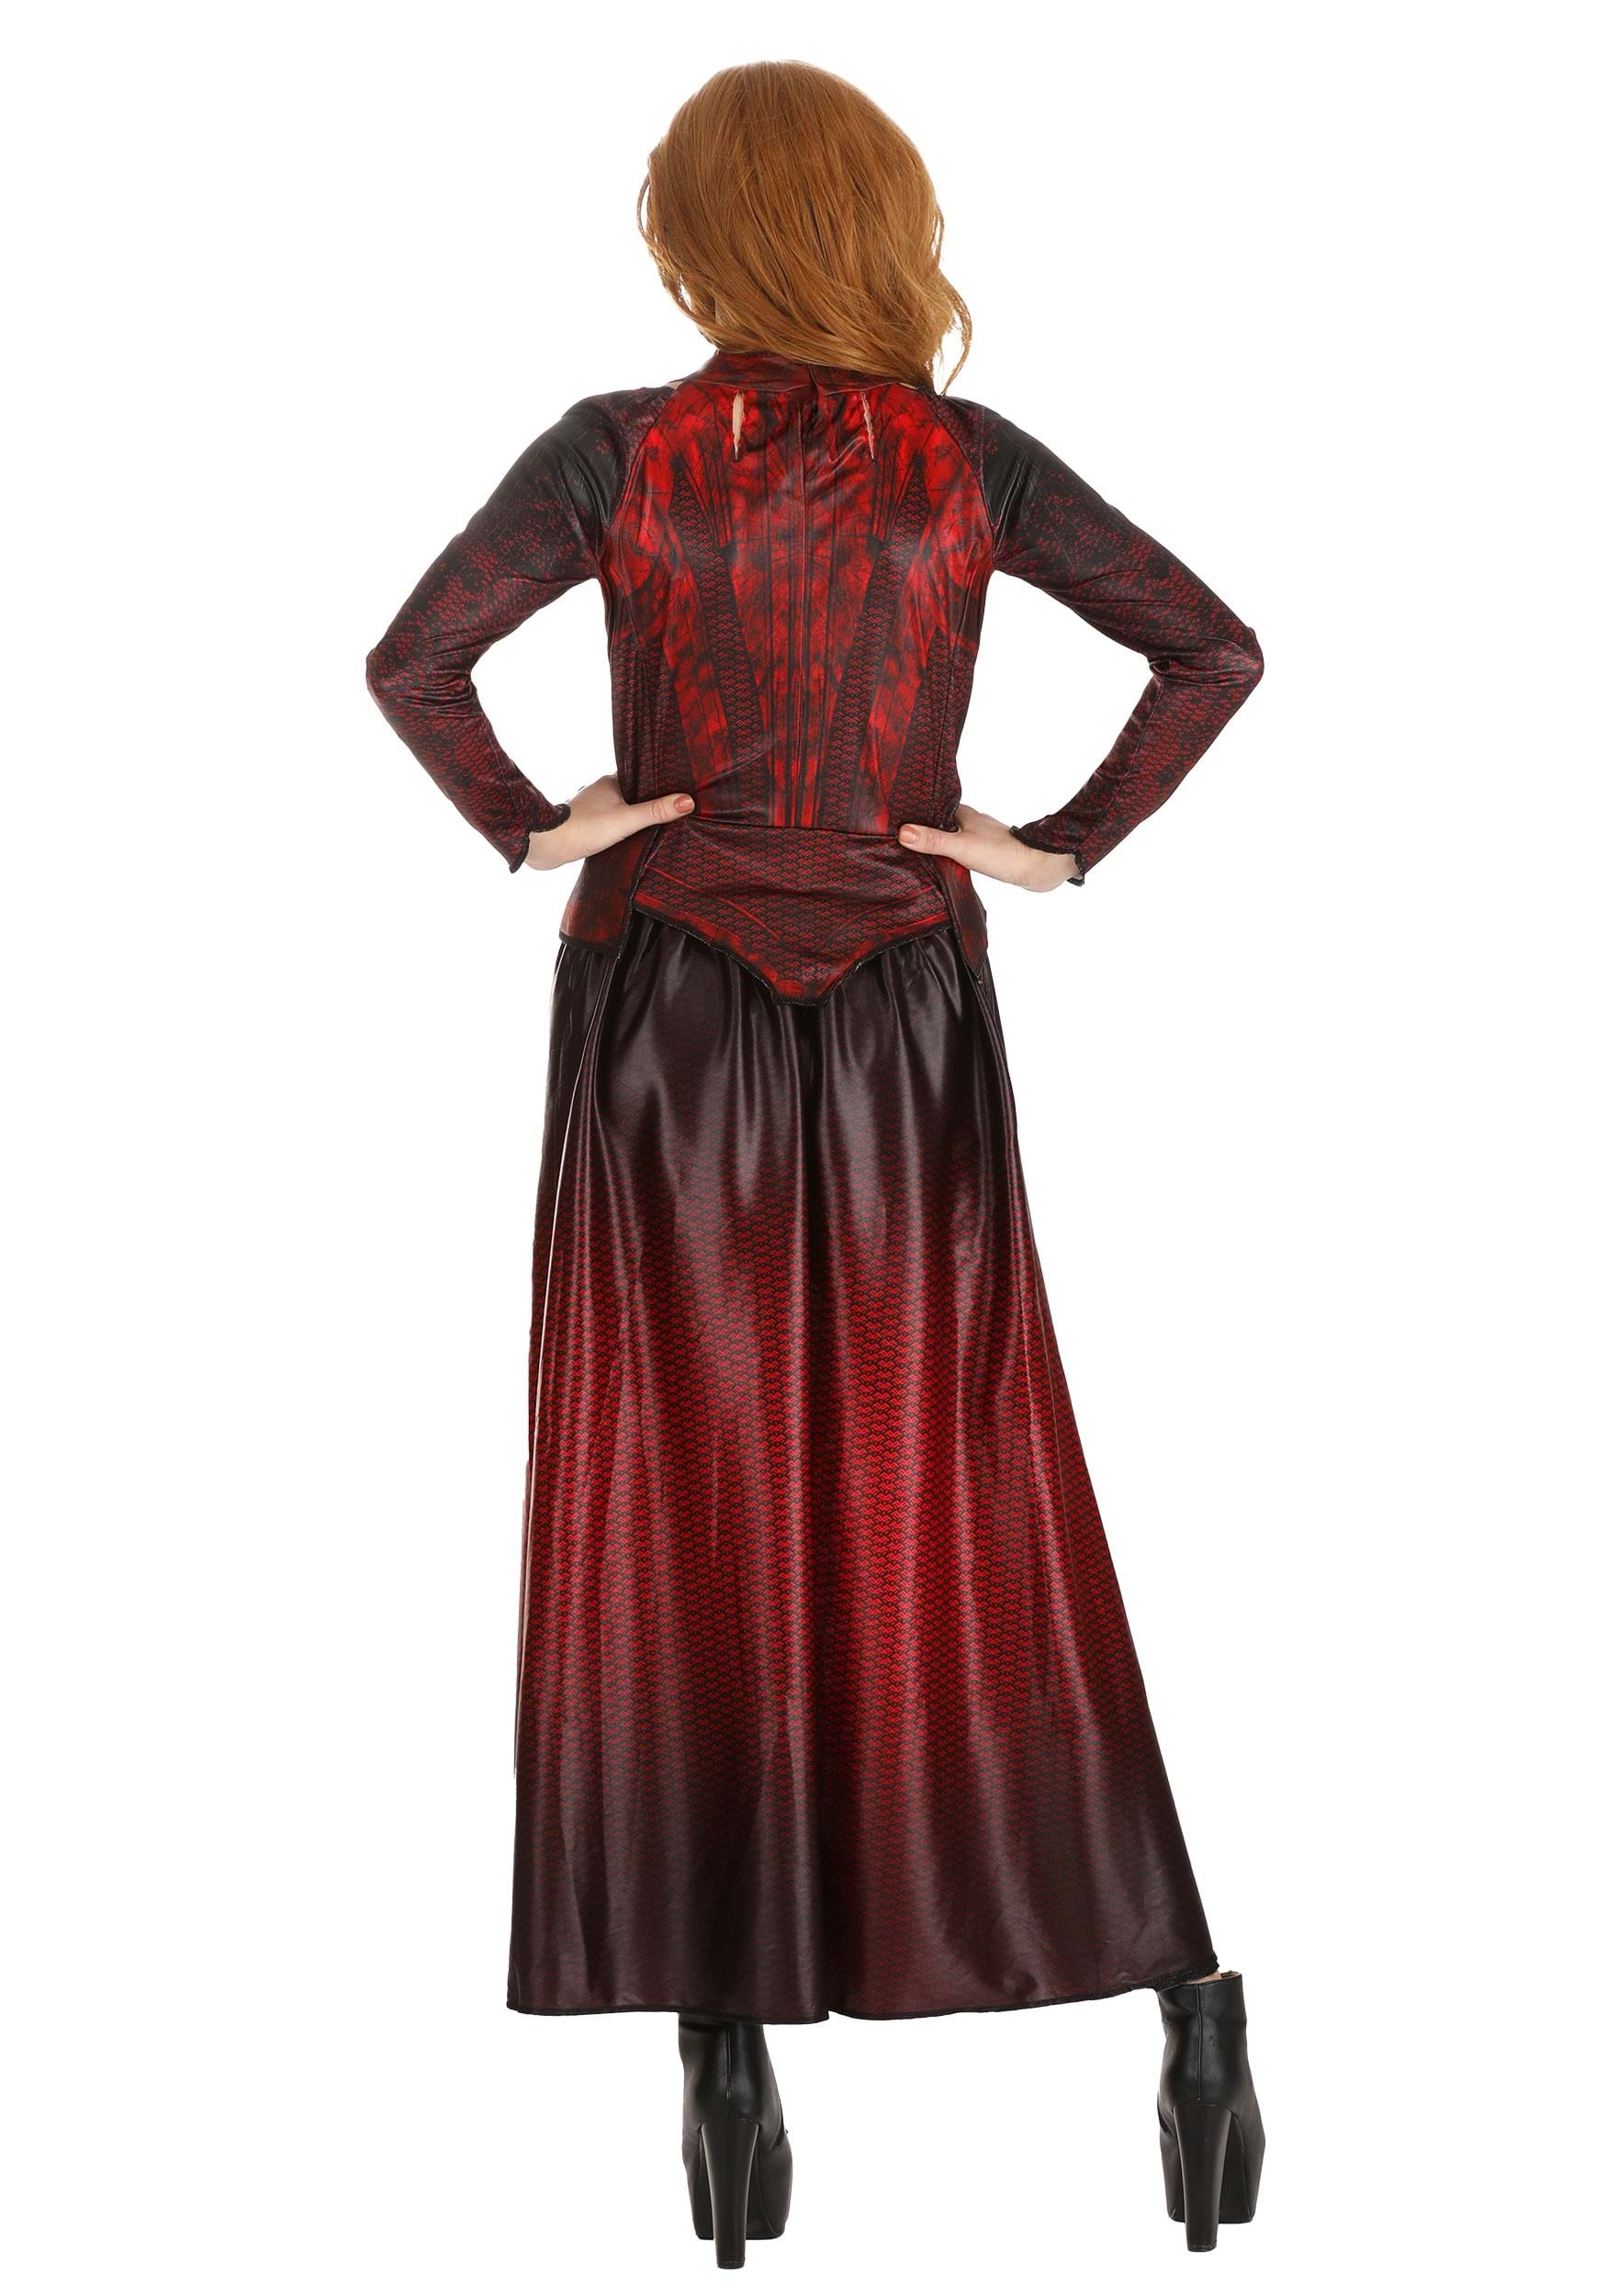 Scarlet Witch Hero Fancy Dress Costume For Women